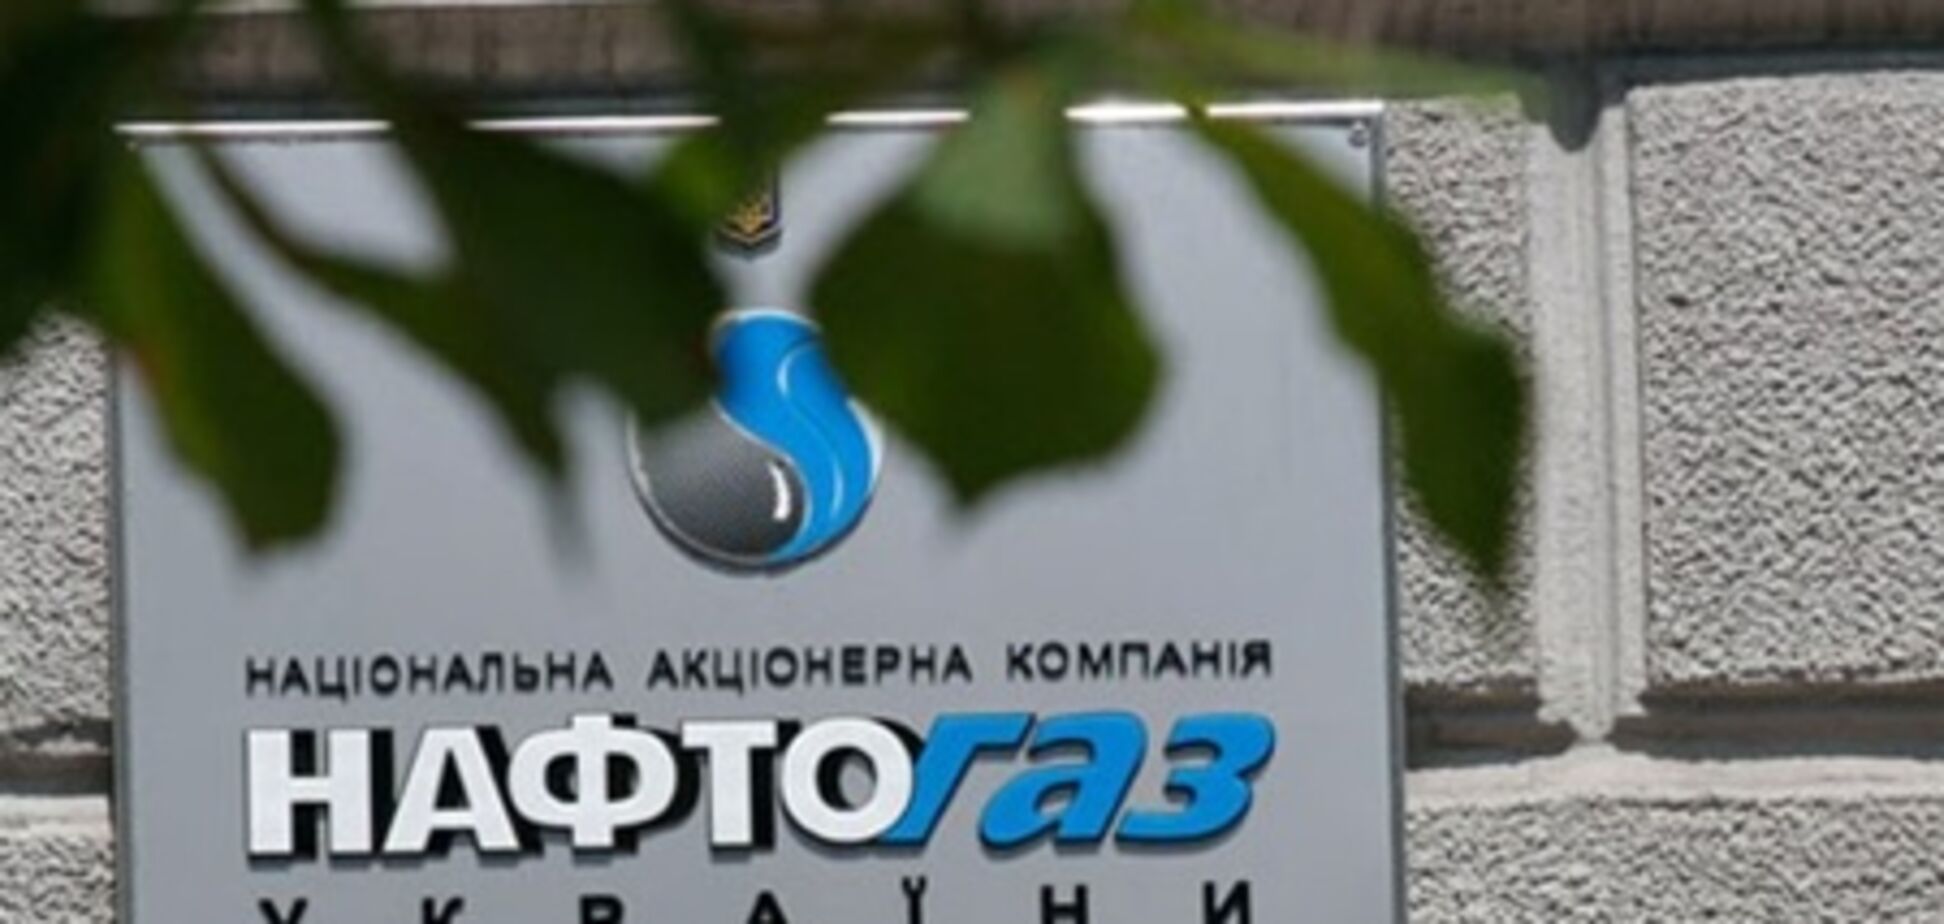 'Нафтогаз Украины' объявит тендер на закупку буровой установки